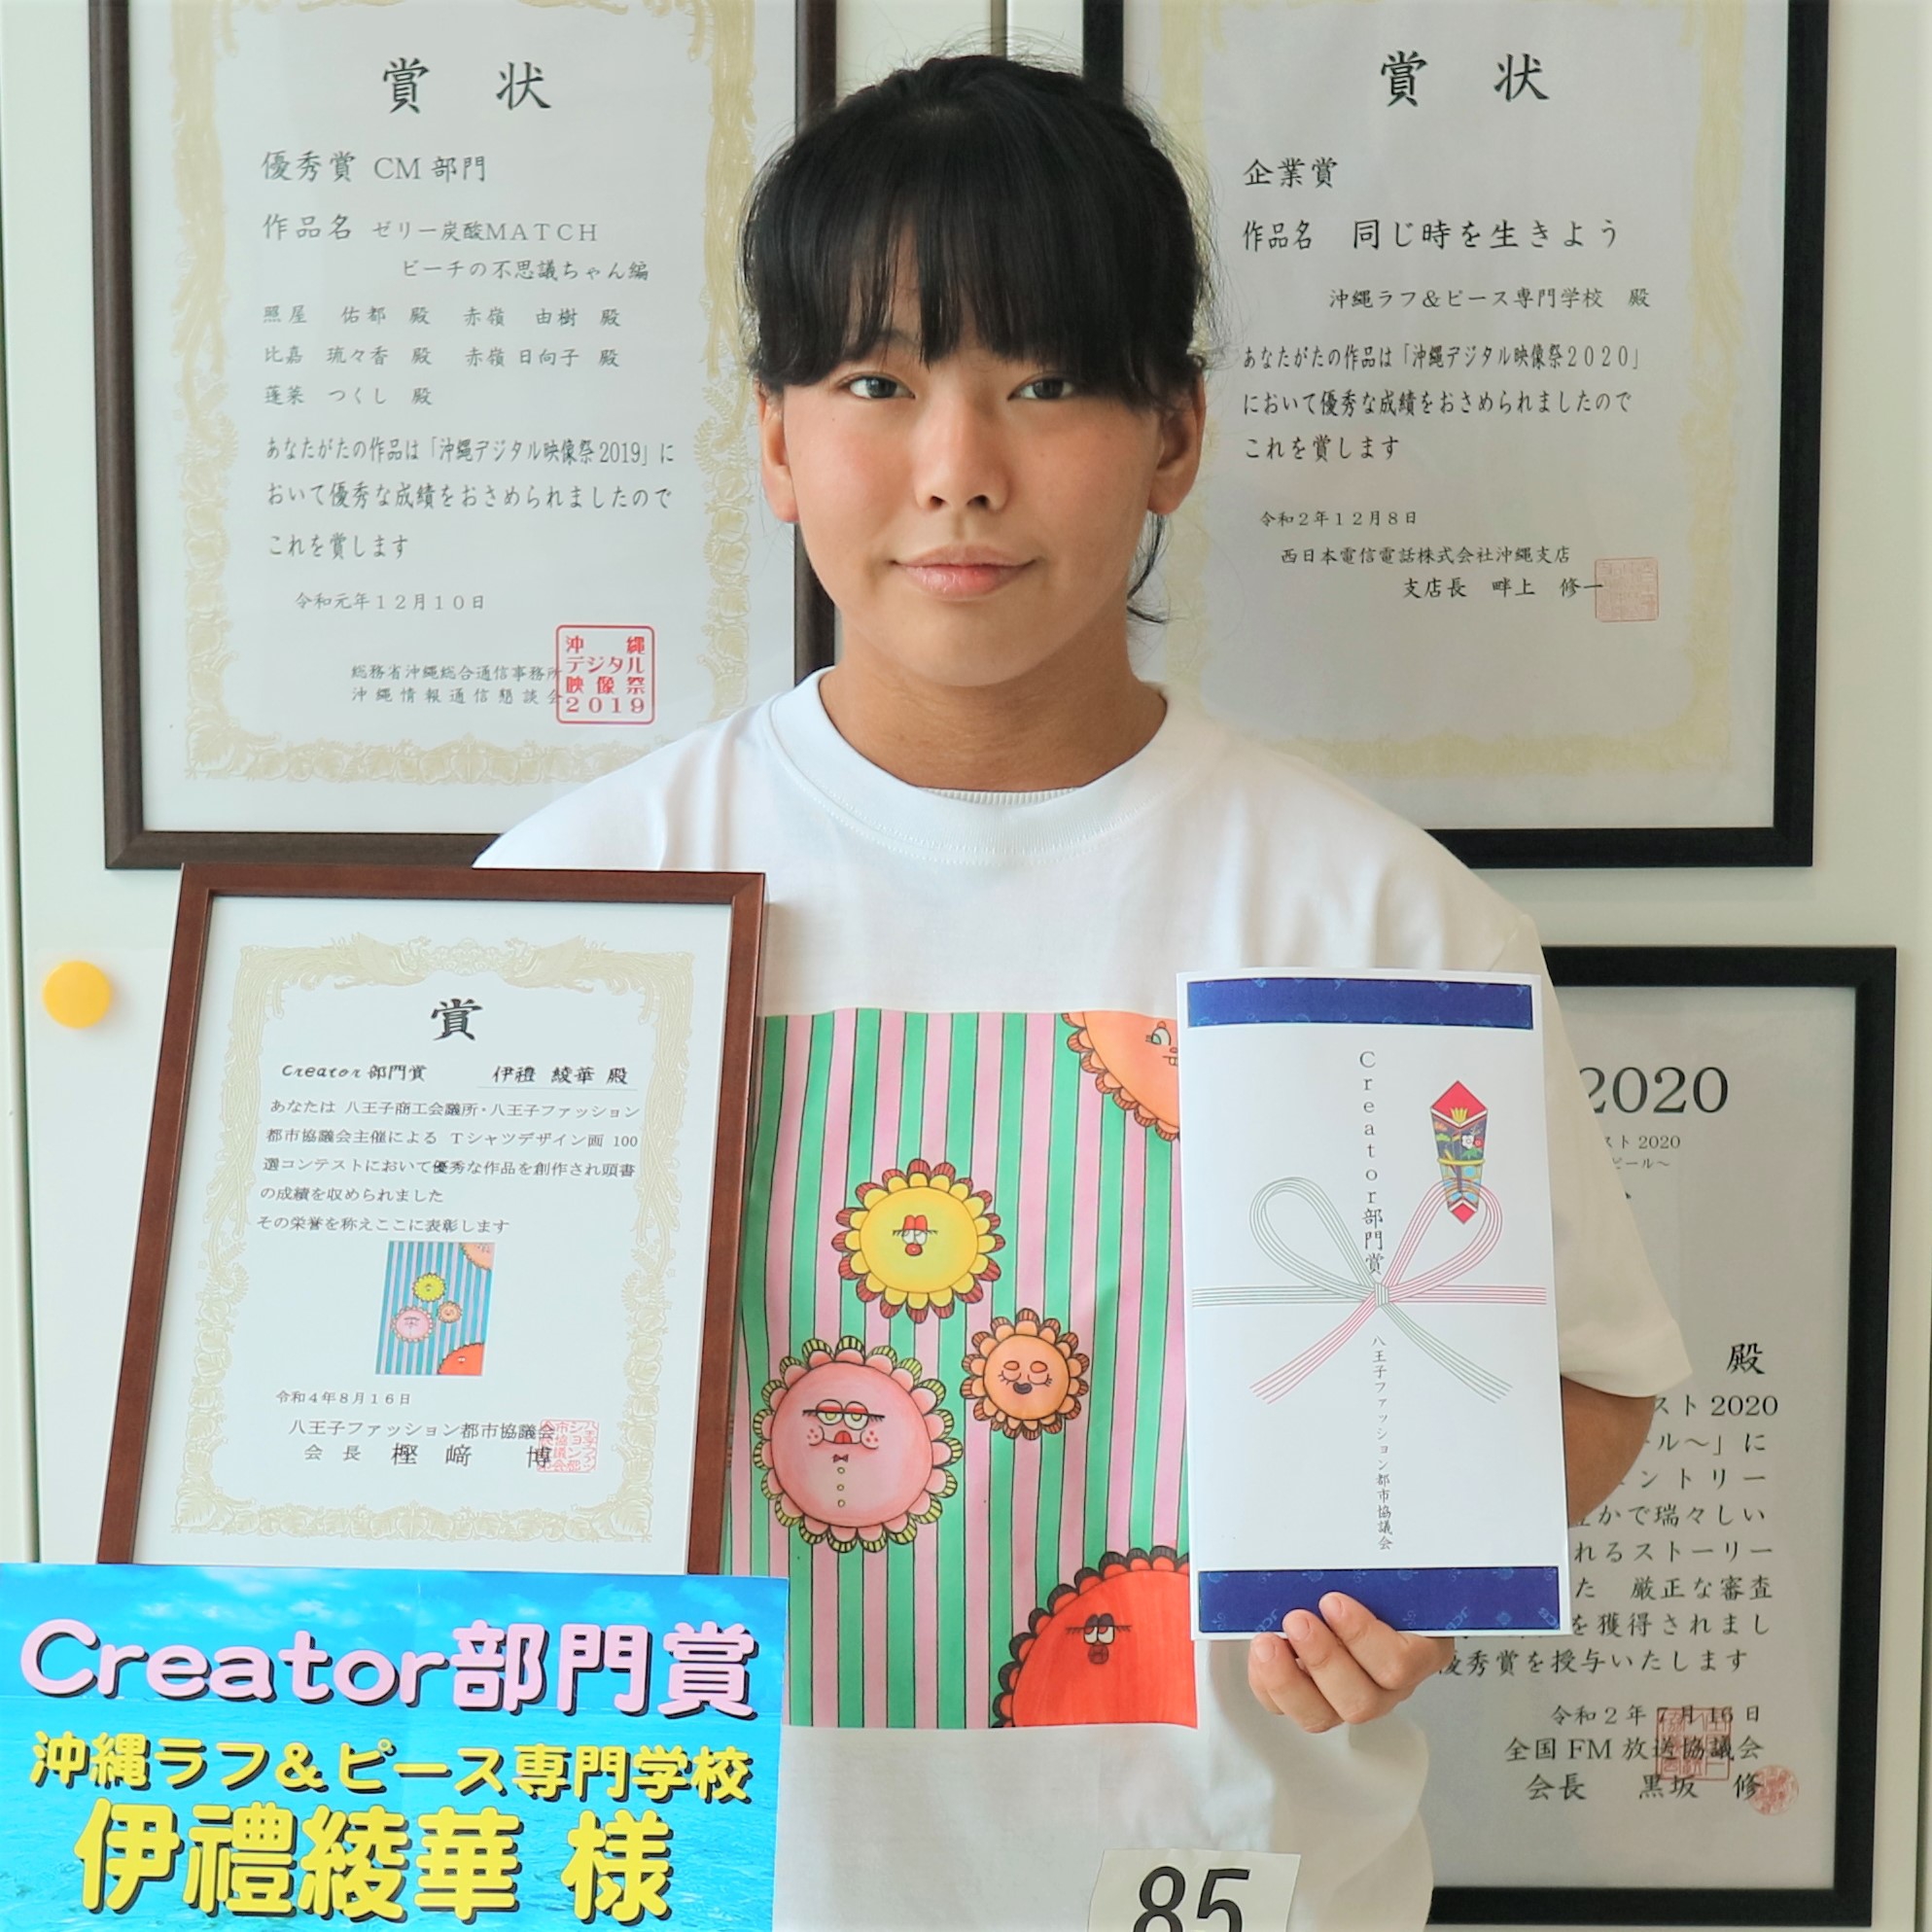 「第20回Tシャツデザイン画100選」にて「Creator 部門賞」受賞